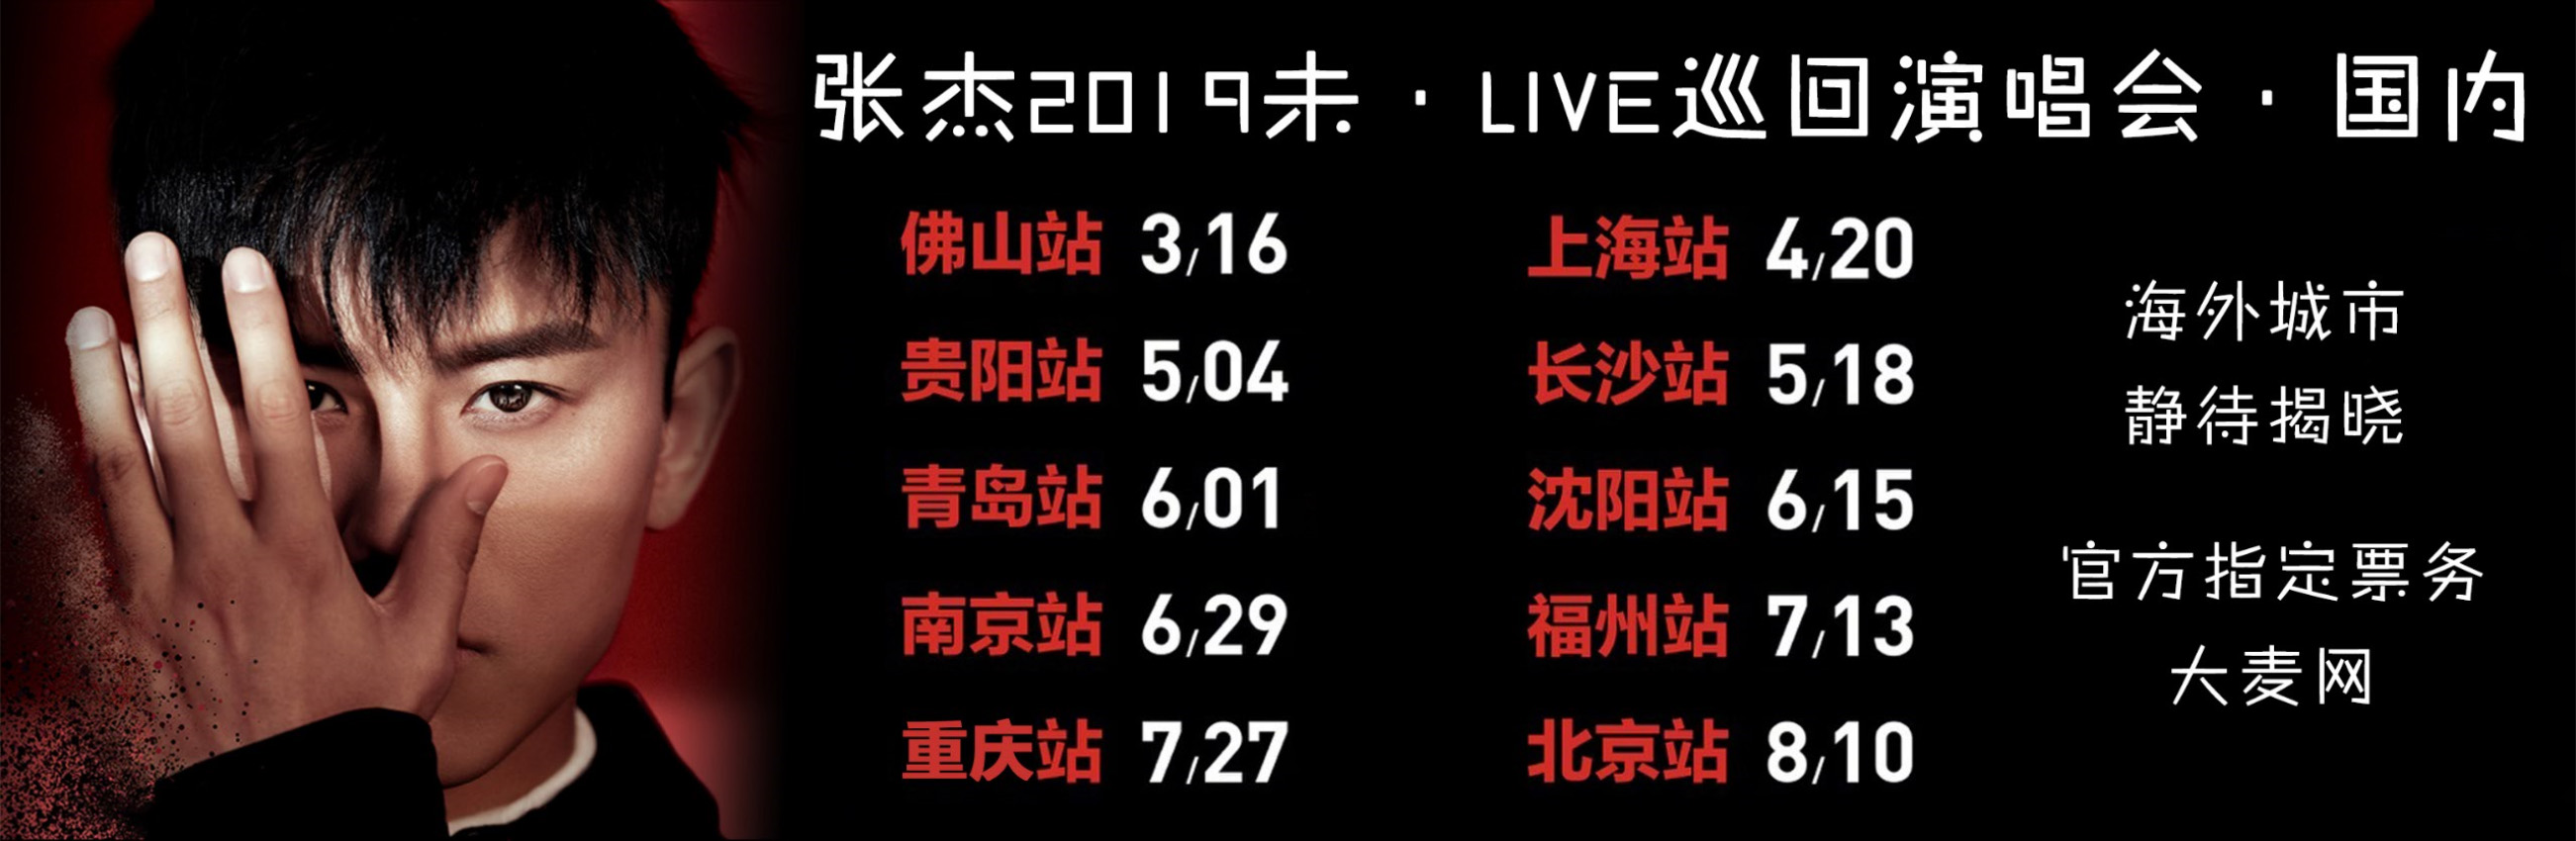 張傑2019未·LIVE巡迴演唱會